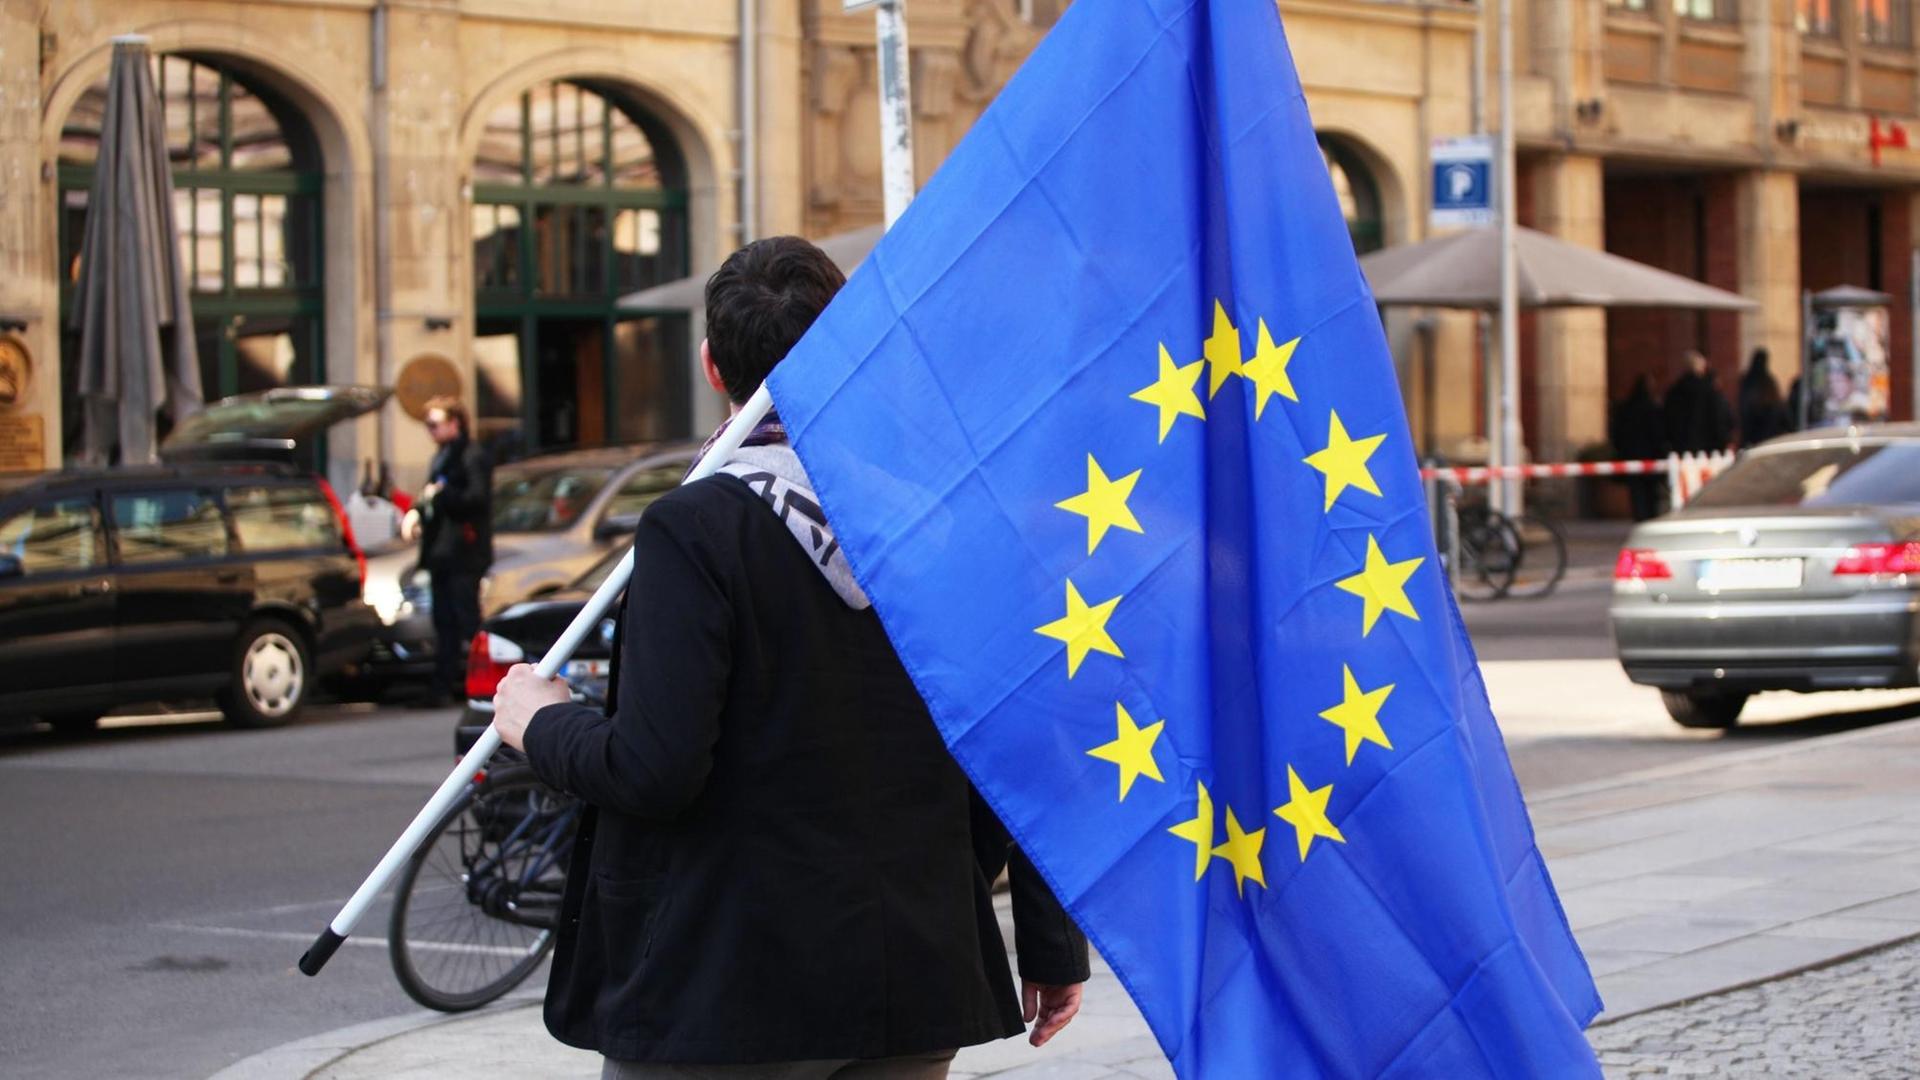 Ein junger Mann trägt eine Europafahne nach einem "Pulse of Europe" Event auf dem Gendarmenmarkt in Berlin im Bezirk Mitte am 26.03.2017. Mehrere Tausend Menschen demonstrierten an dem Tag auf dem Gendarmenmarkt für ein friedliches, geeintes und grenzfreies Europa.